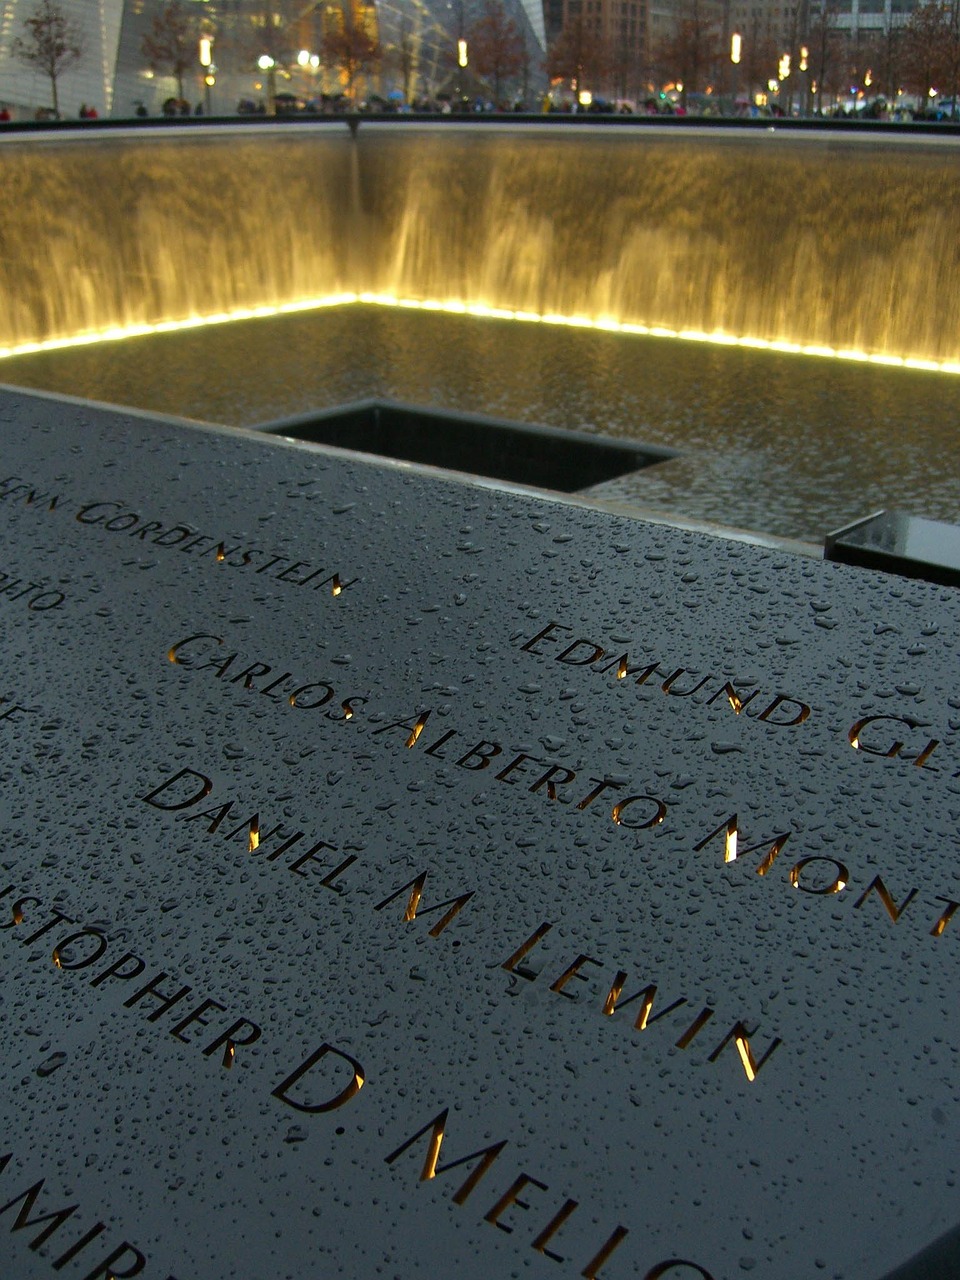 9/11 memorial NYC, New York